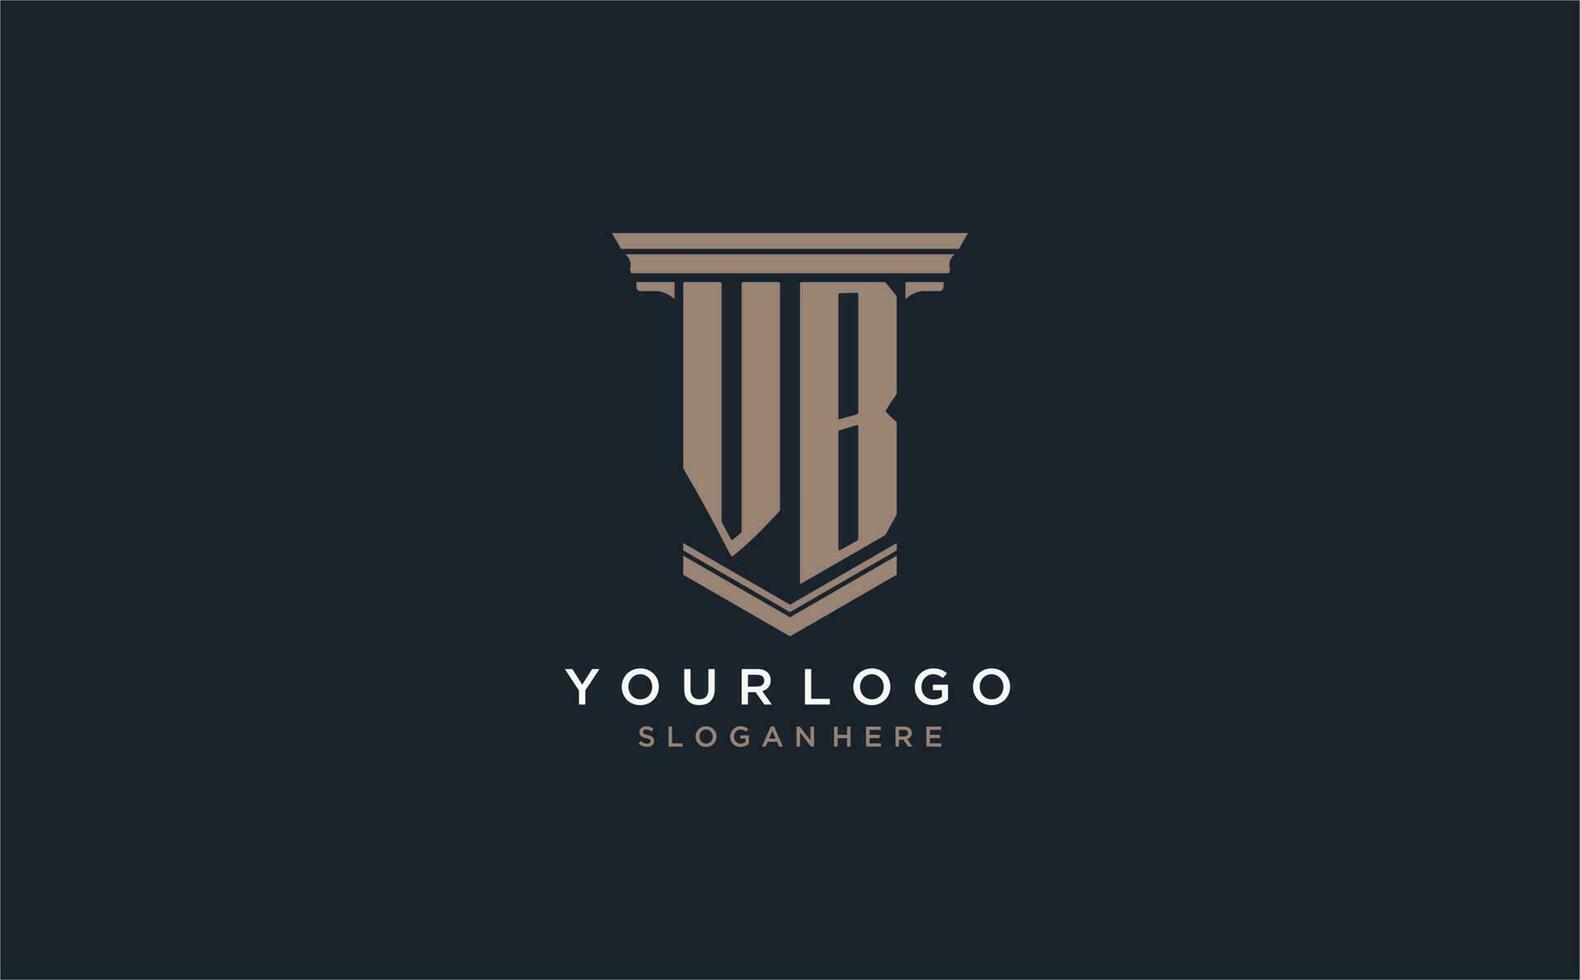 vb eerste logo met pijler stijl, luxe wet firma logo ontwerp ideeën vector